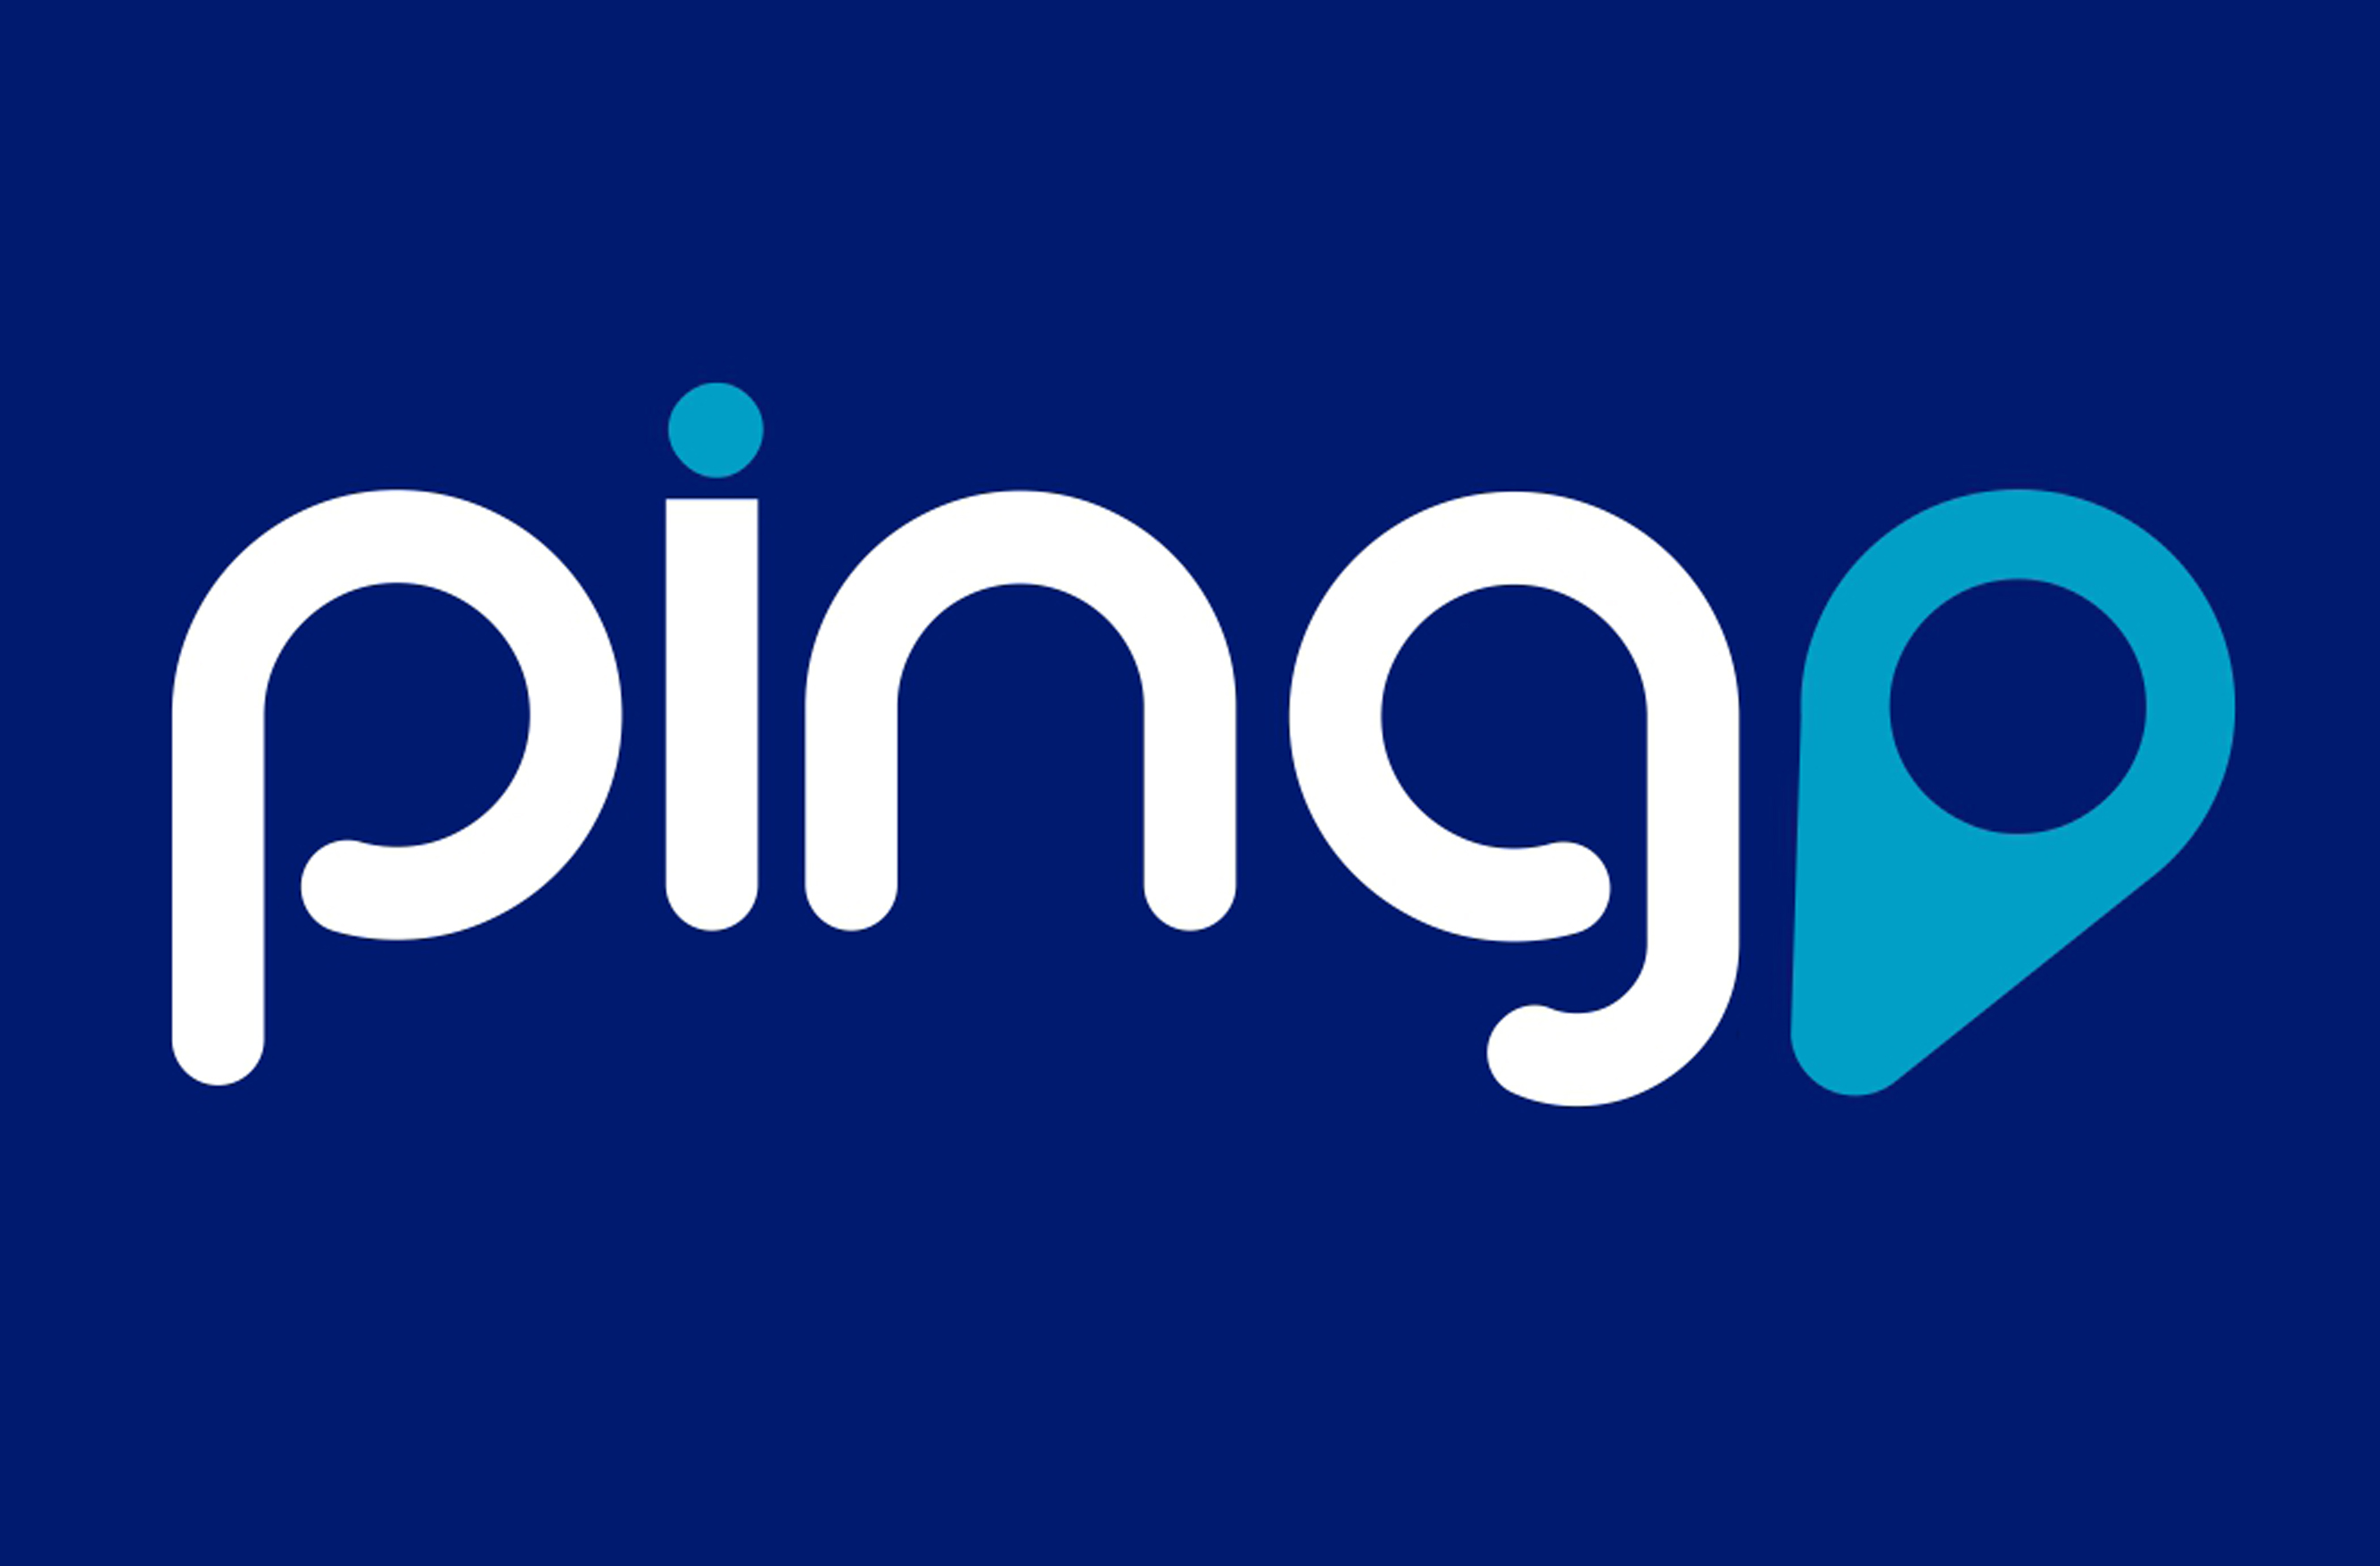 Pingo, aplicación cucuteña para conectar empresas con clientes.